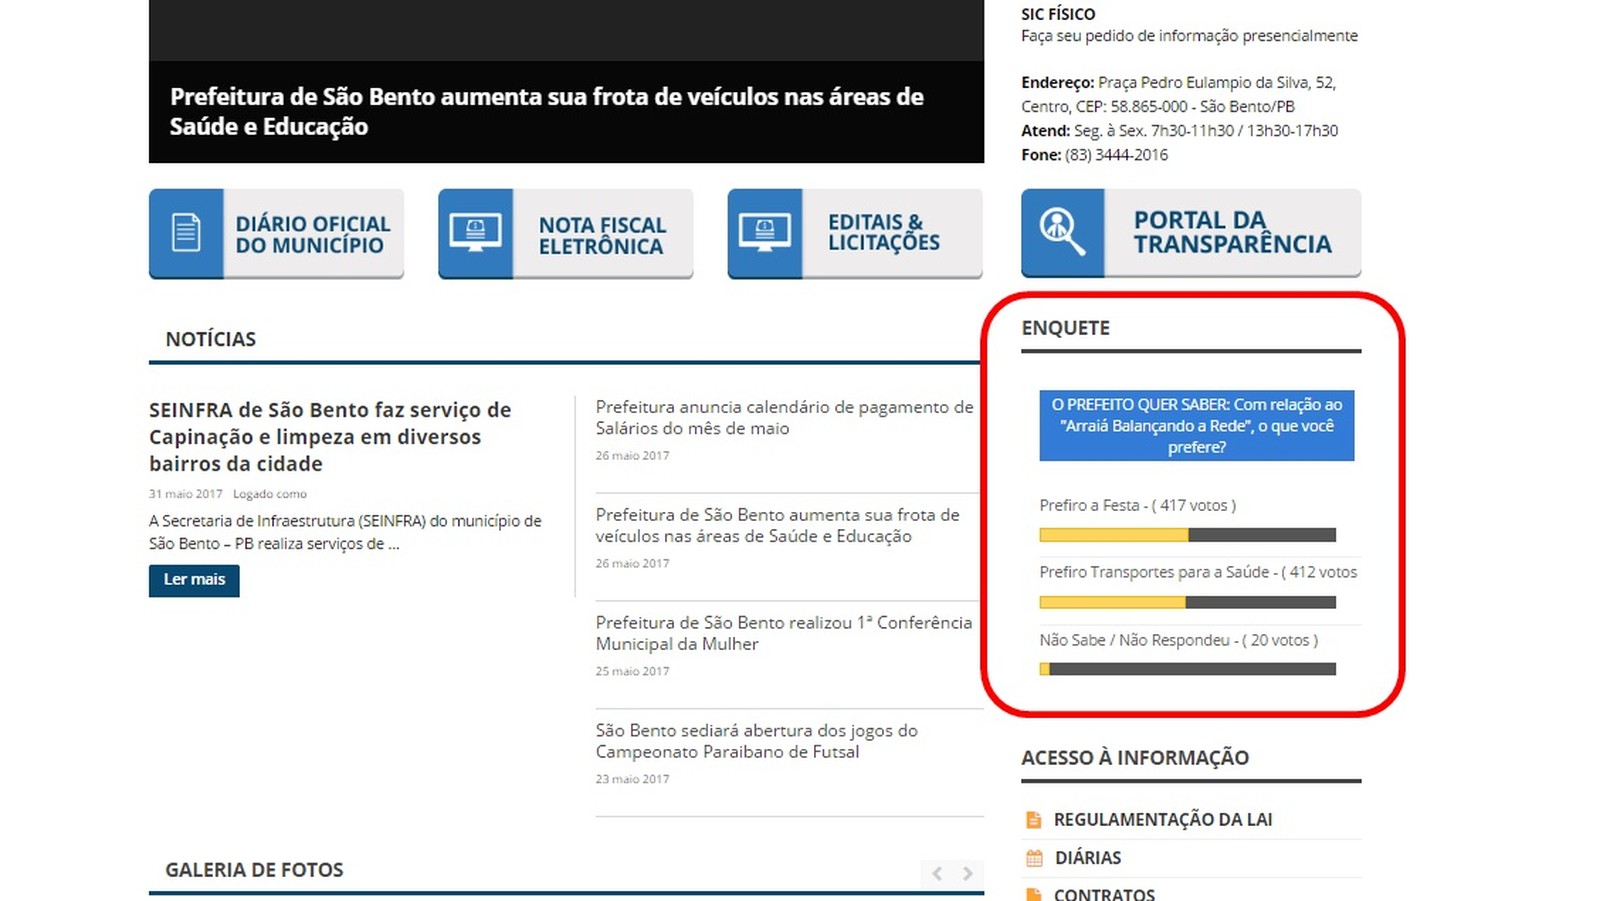 Enquete está sendo feita no site oficial da prefeitura de São Bento, na Paraíba (Foto: Reprodução/Site da prefeitura de São Bento)